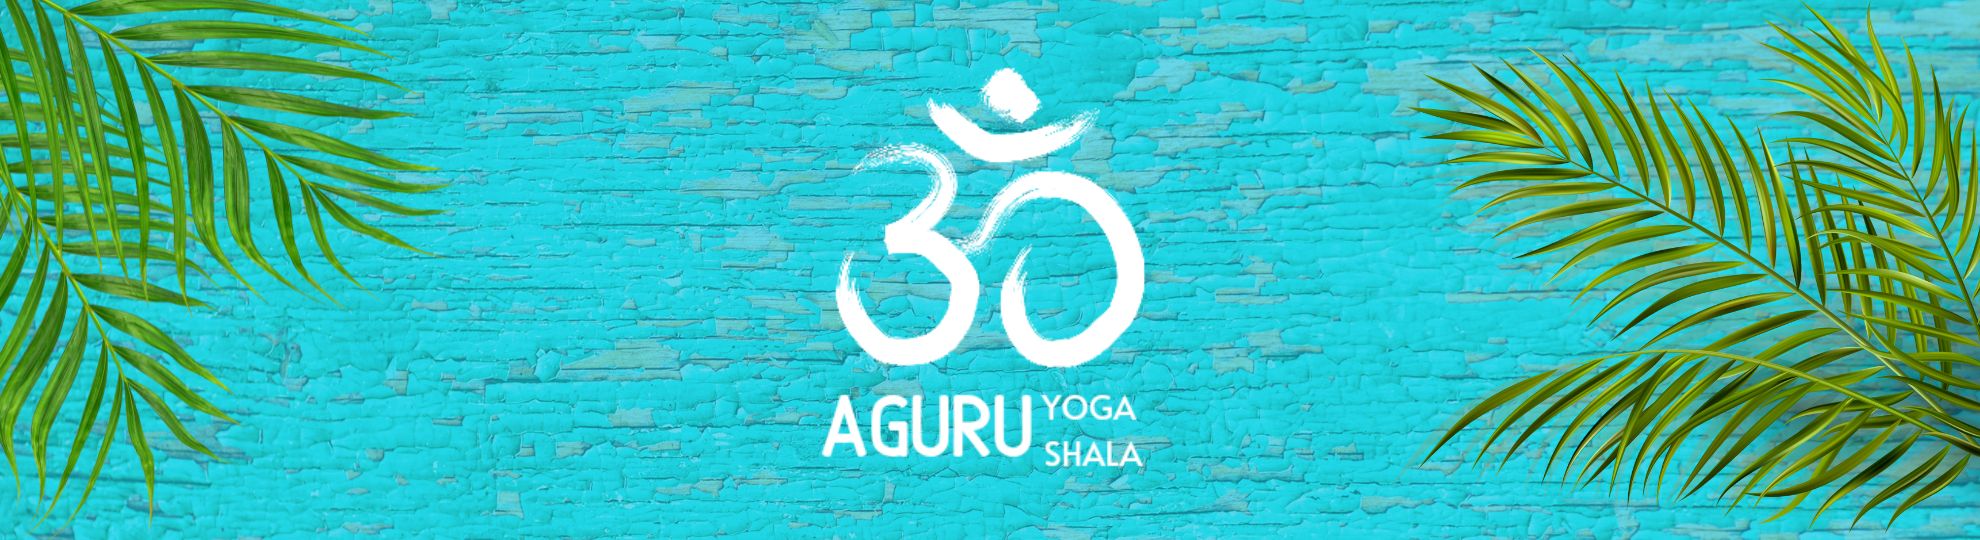 Aguru Yoga Shala Cancun - CENTRO HOLISTICO DE YOGA Y MEDITACION